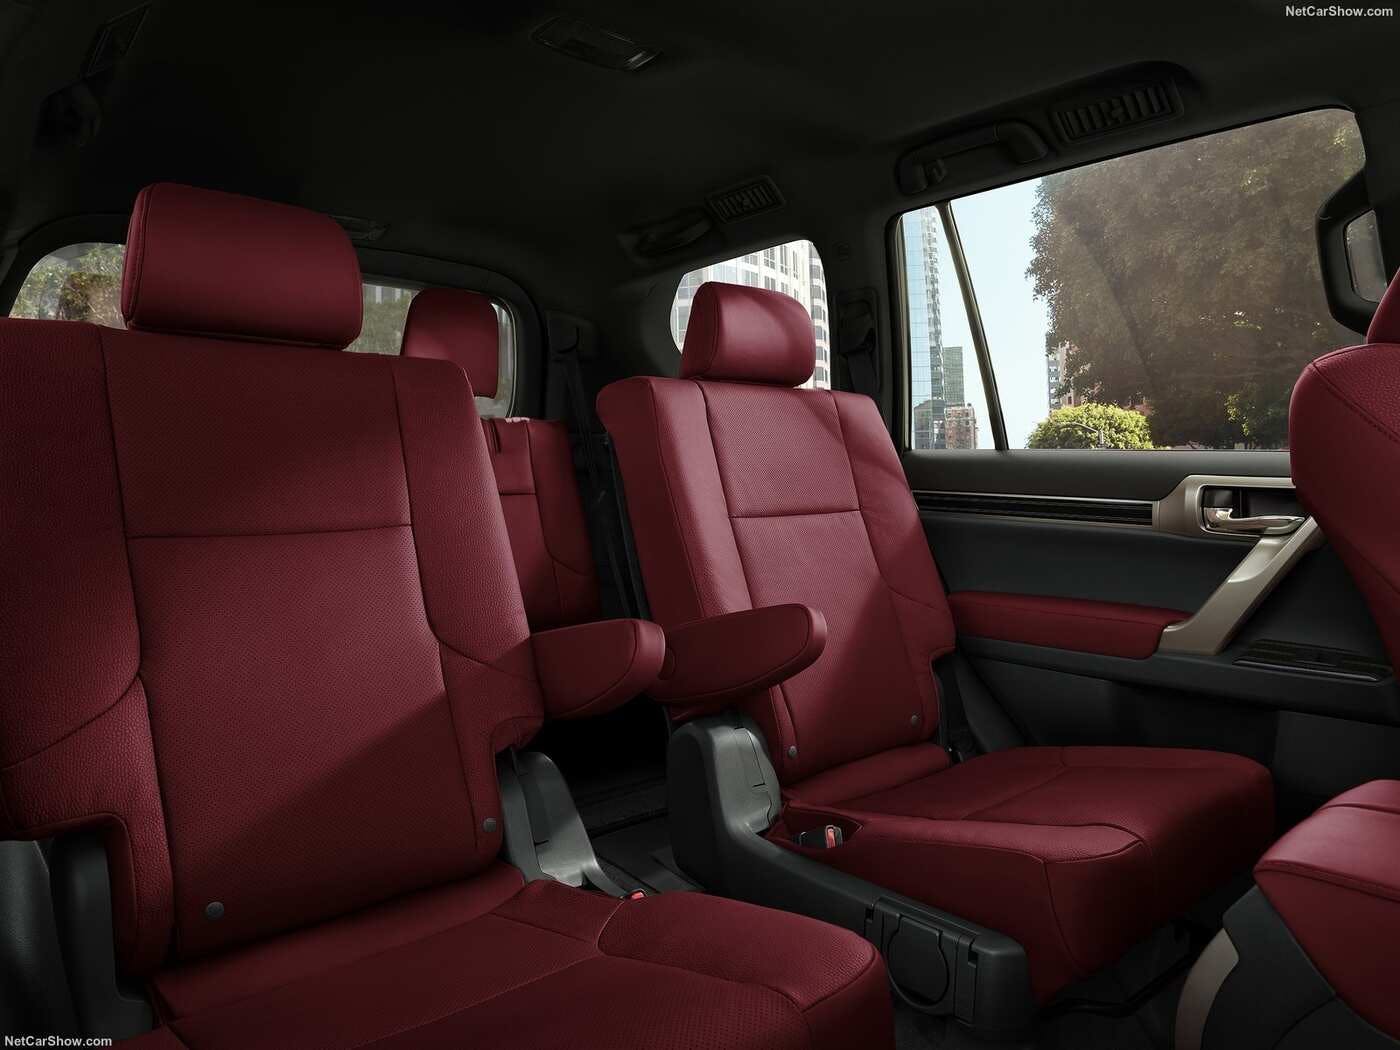 2020 Lexus Gx Comparisons Reviews Pictures Truecar